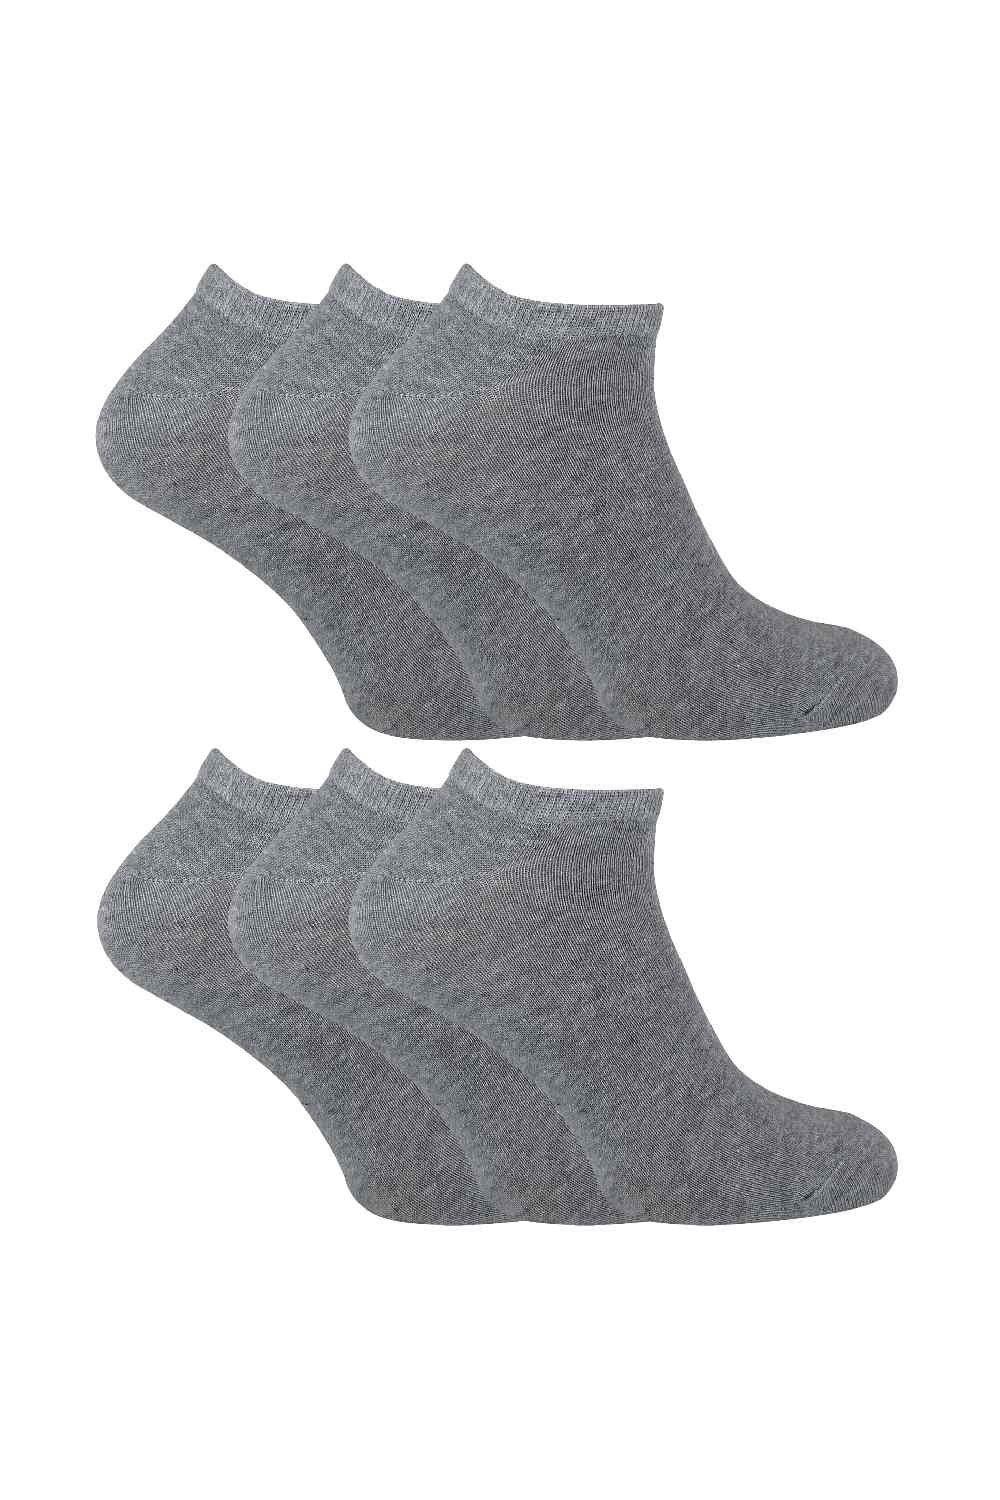 Набор из 6 хлопковых коротких спортивных носков для тренажерного зала Sock Snob, серый набор из 6 хлопковых коротких спортивных носков для тренажерного зала sock snob белый